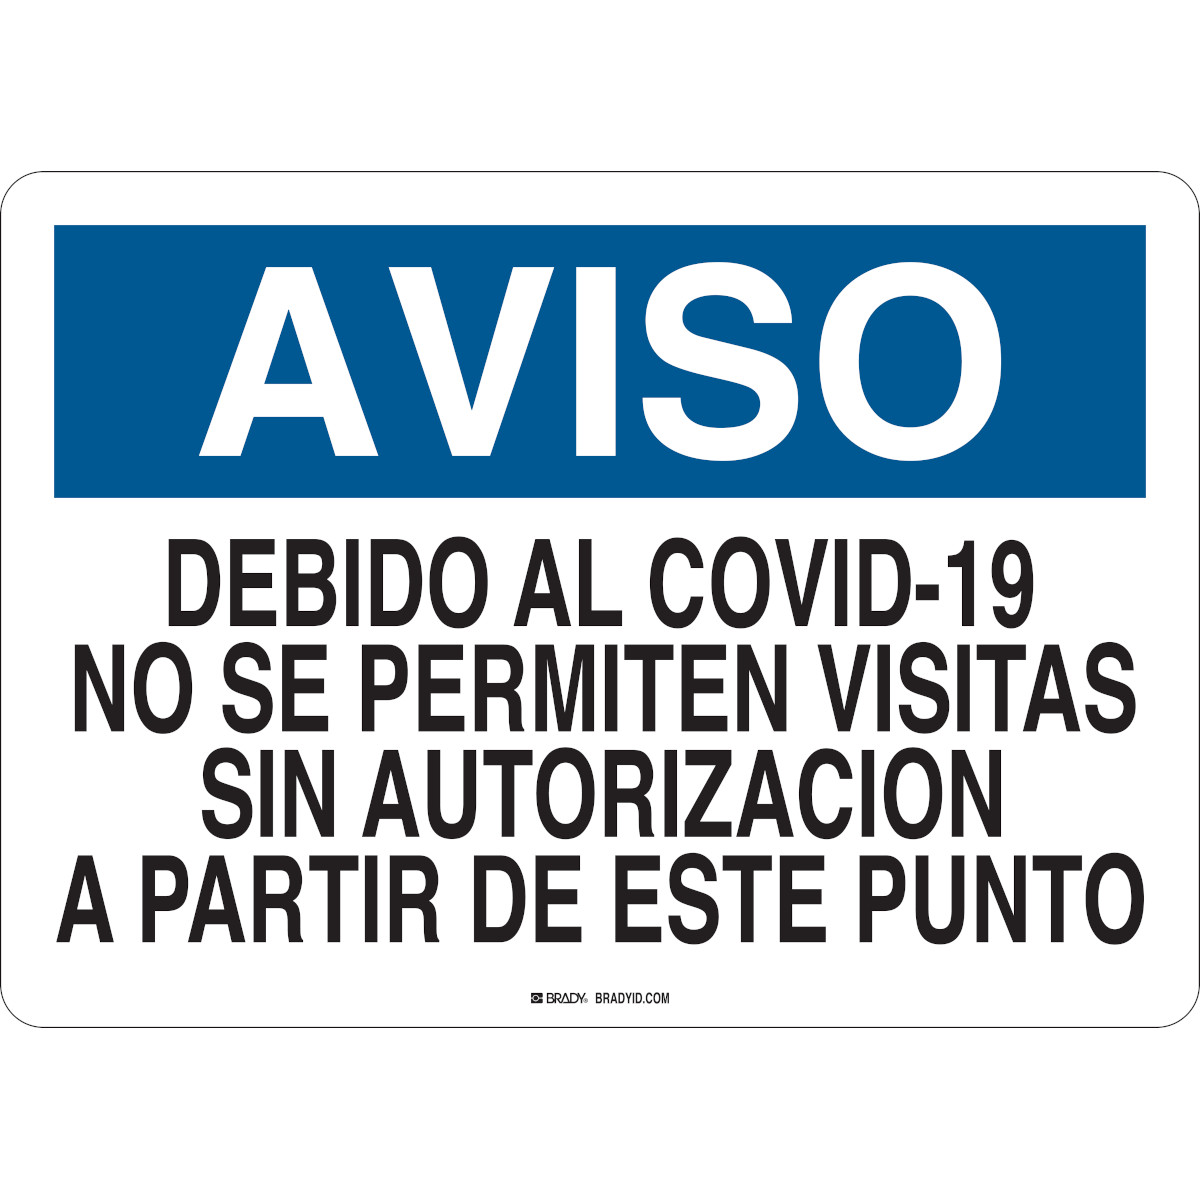 Aviso Debido Al Covid-19 No Se Permiten Visitas Sign